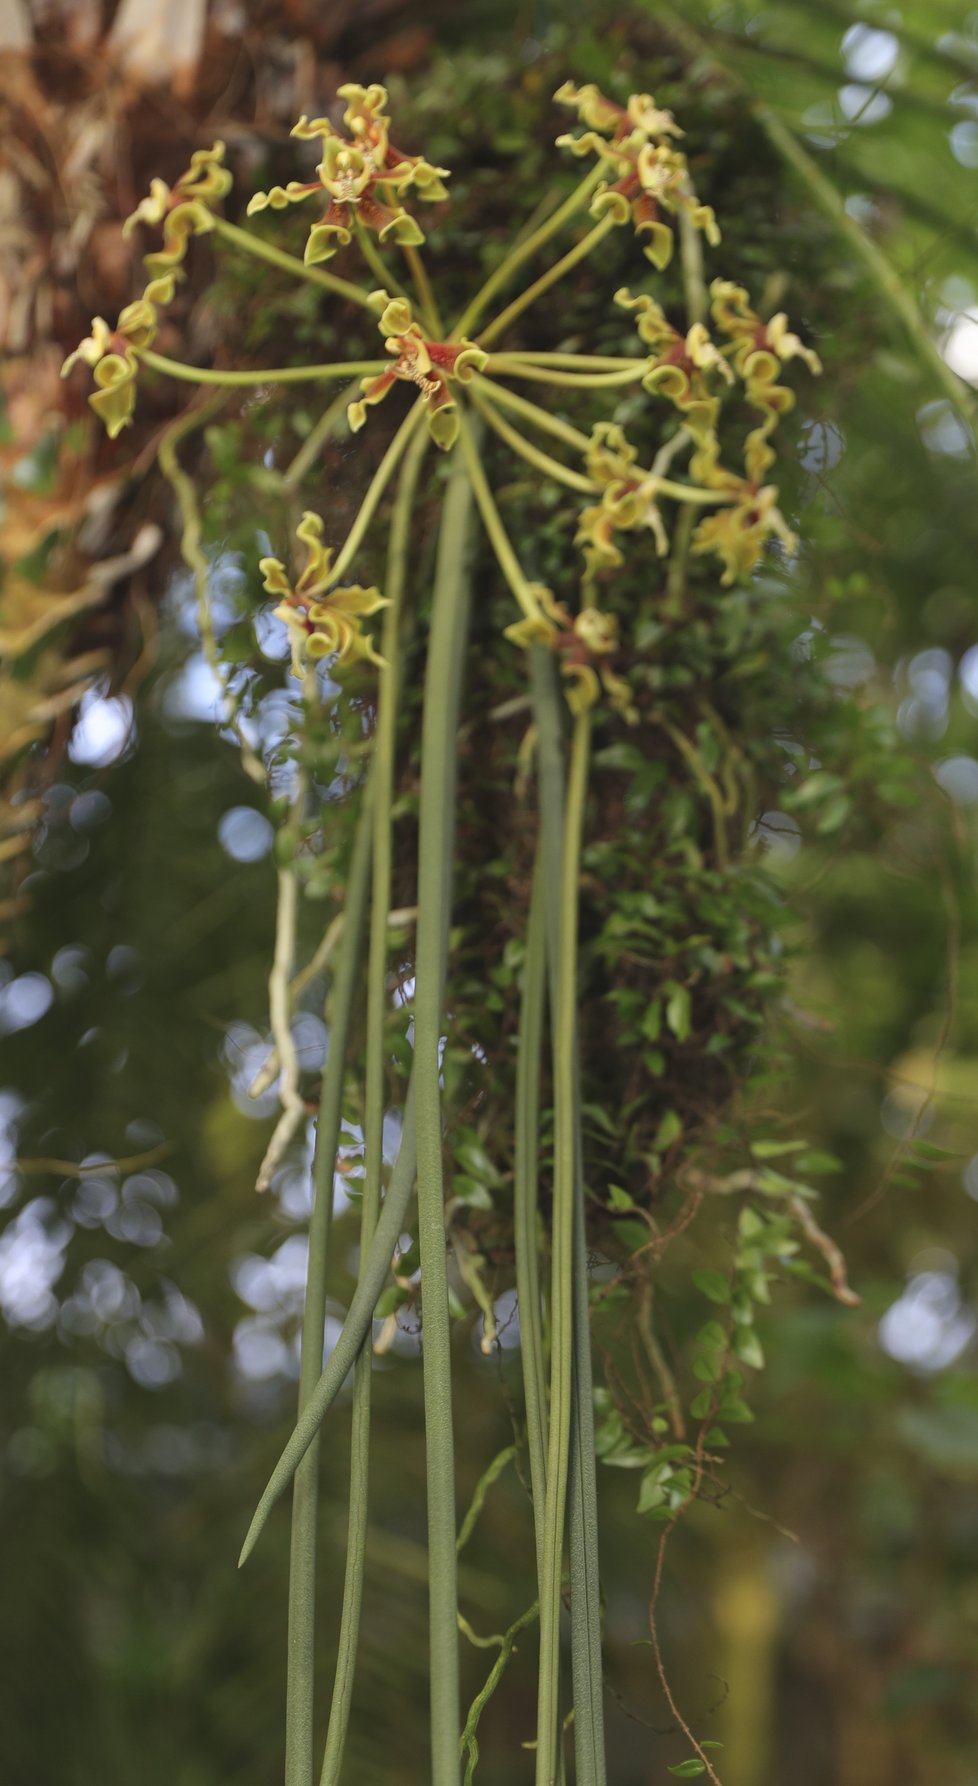 Paraphalaenopsis labukensis má ze všech orchidejí nejdelší listy. Roste převážně na stromech.